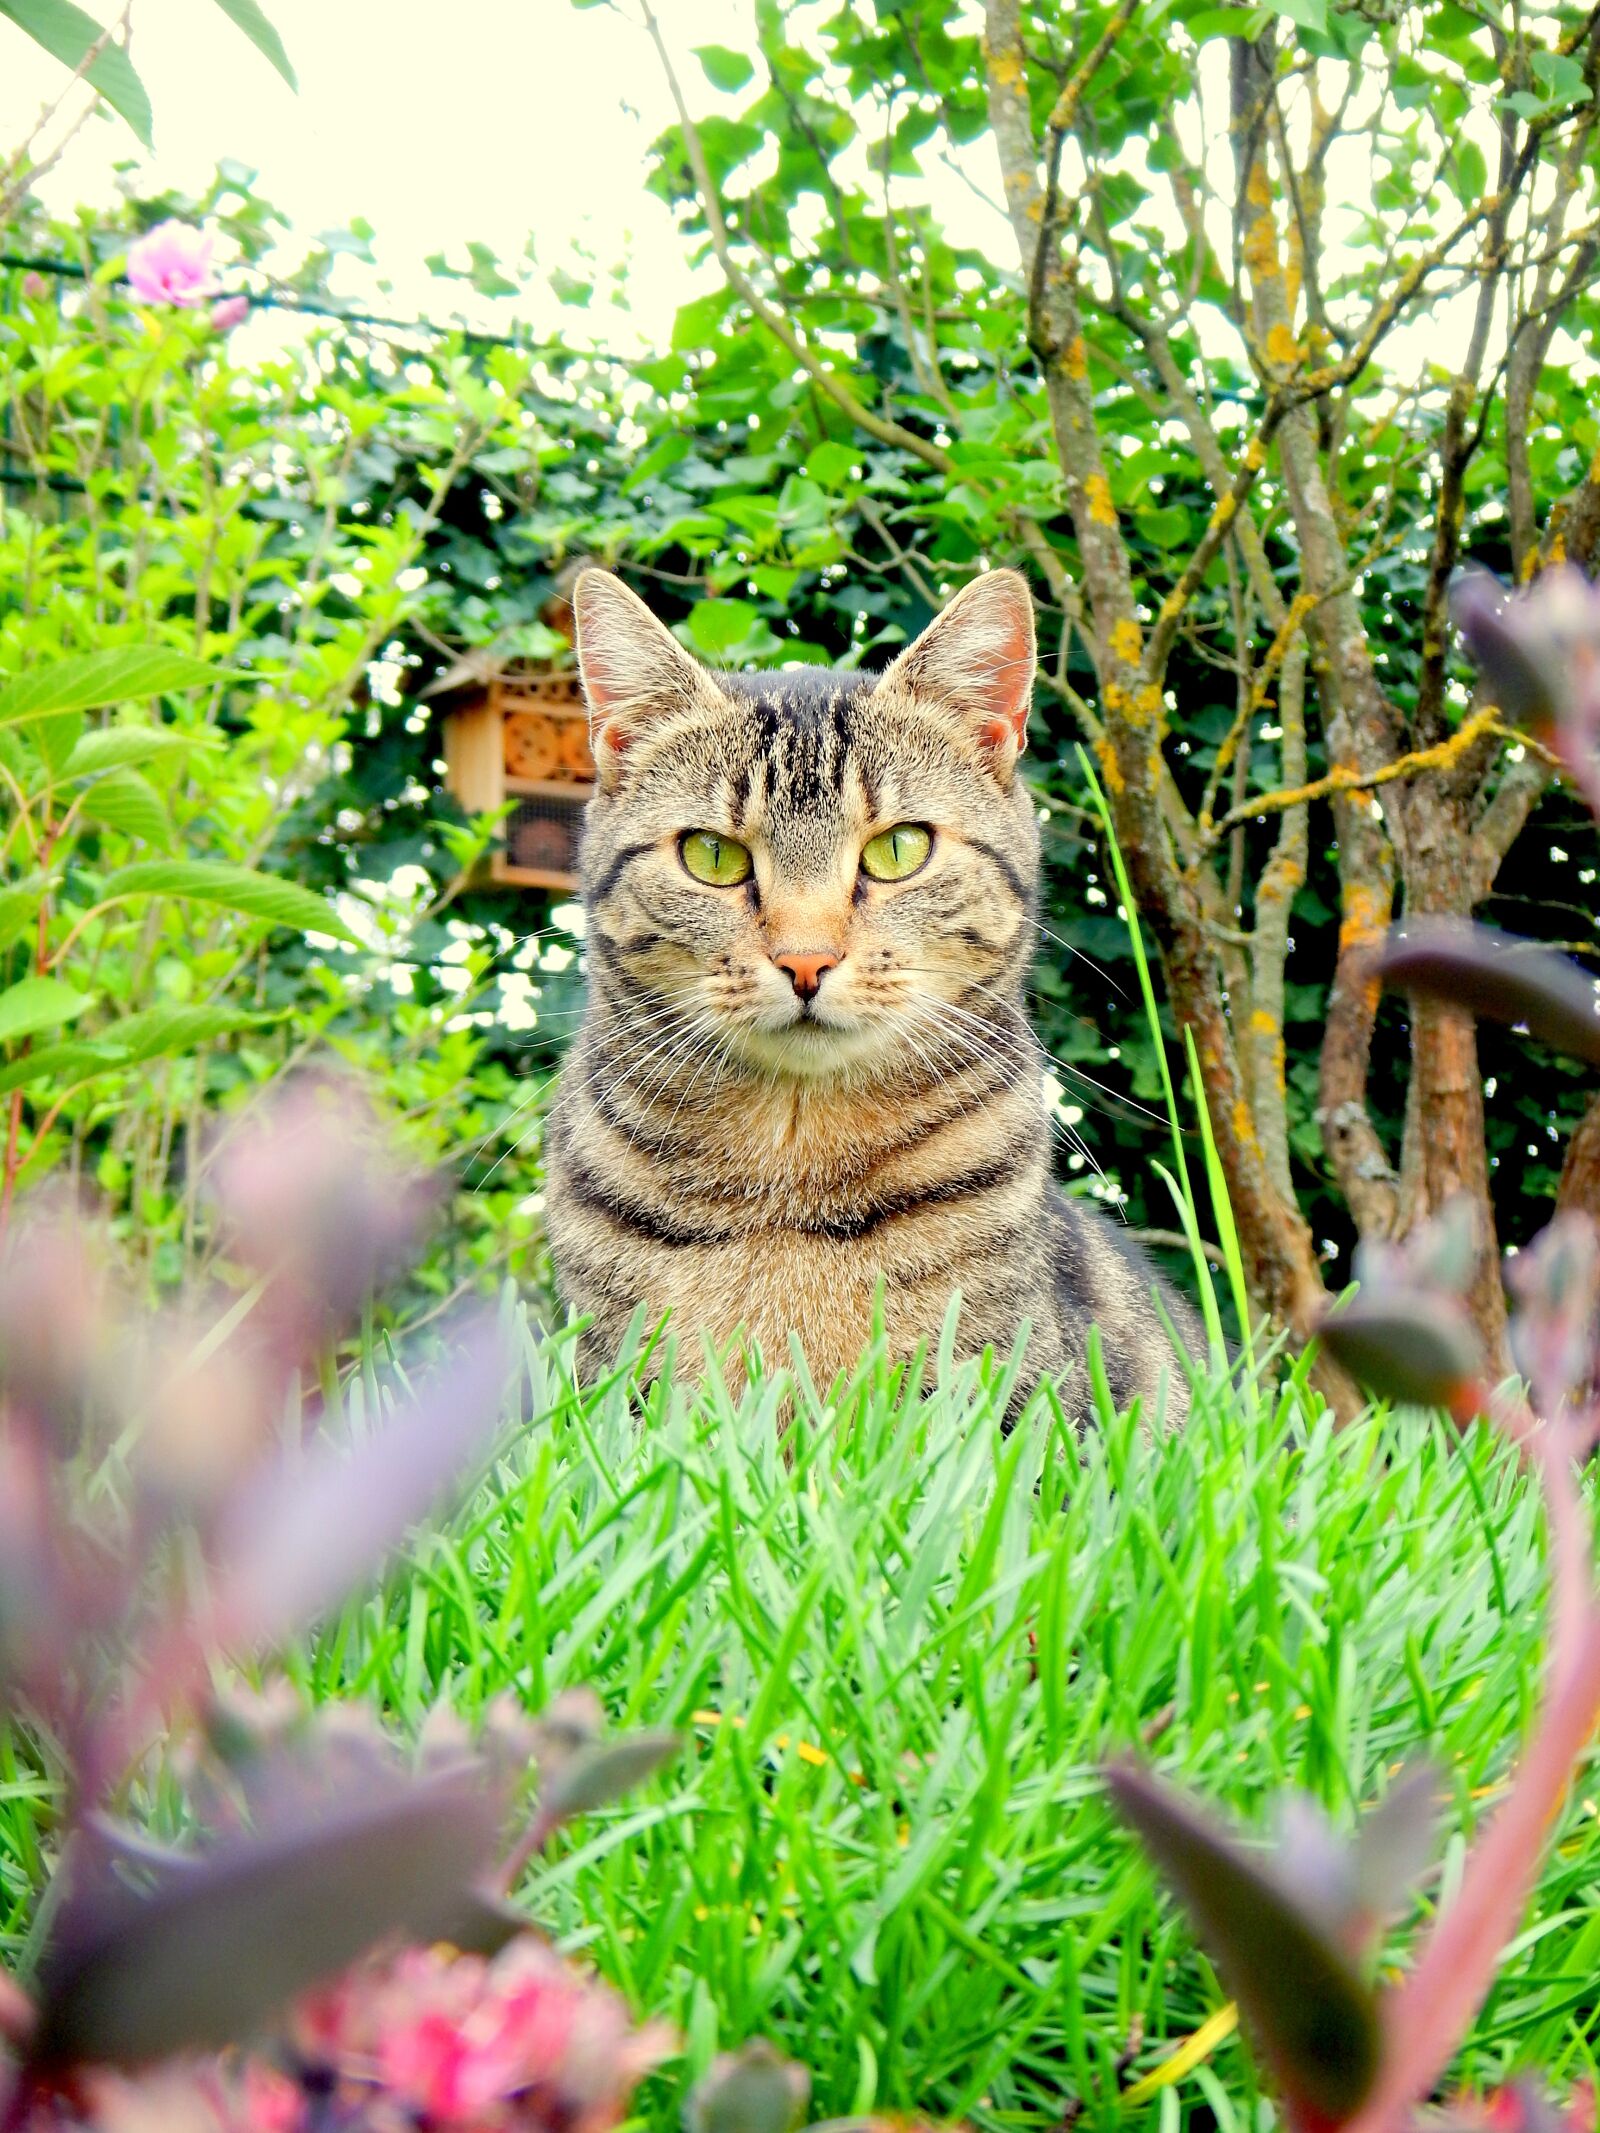 Nikon Coolpix AW110 sample photo. Cat, garden, pet photography